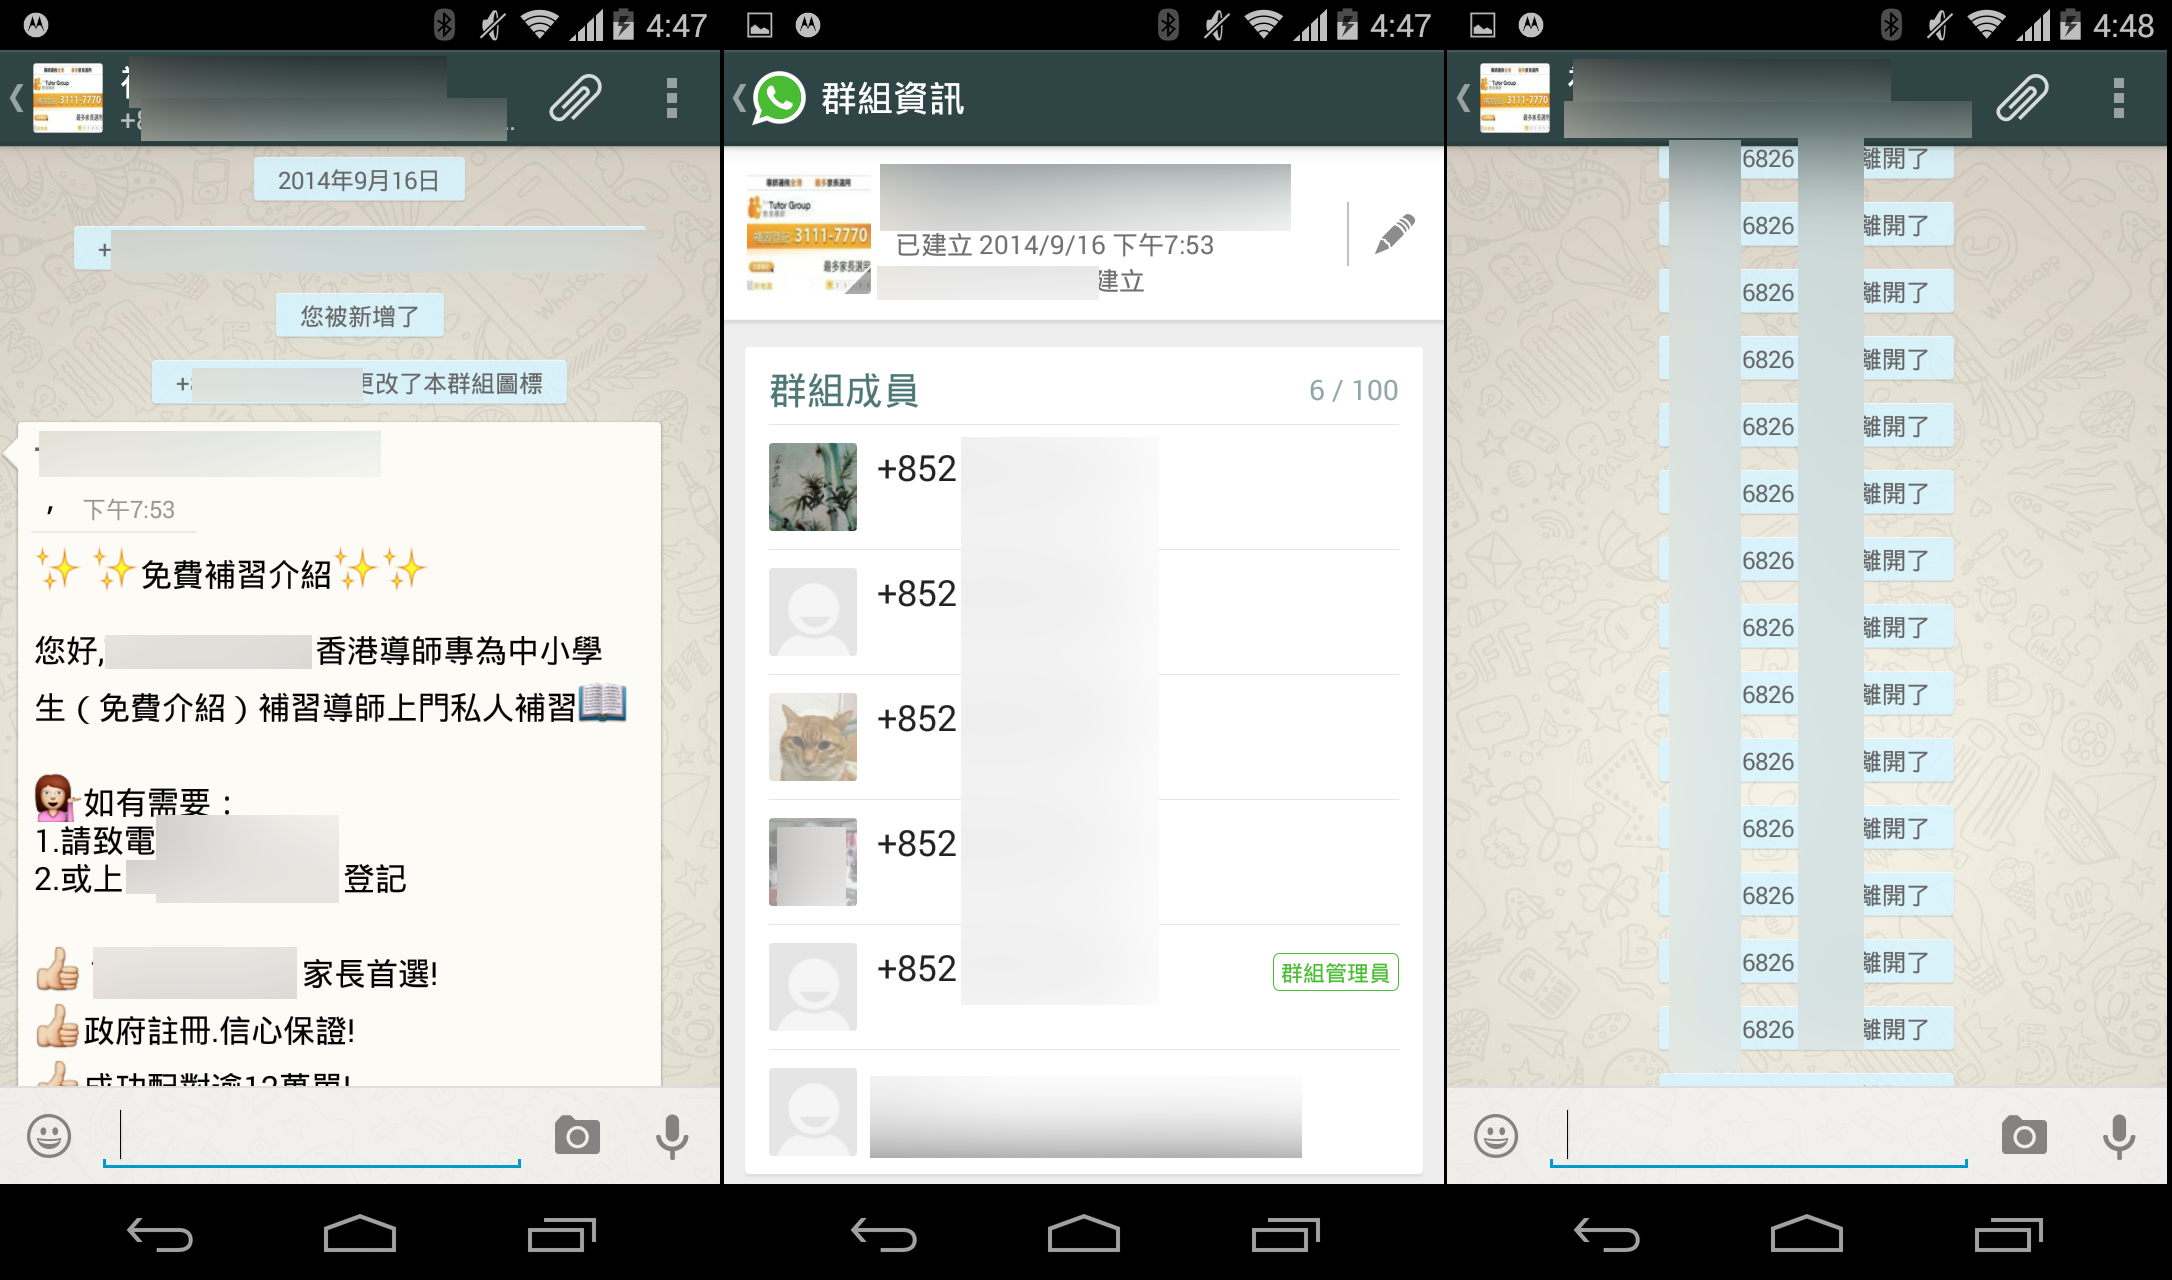 whatsapp junk message in hk 00